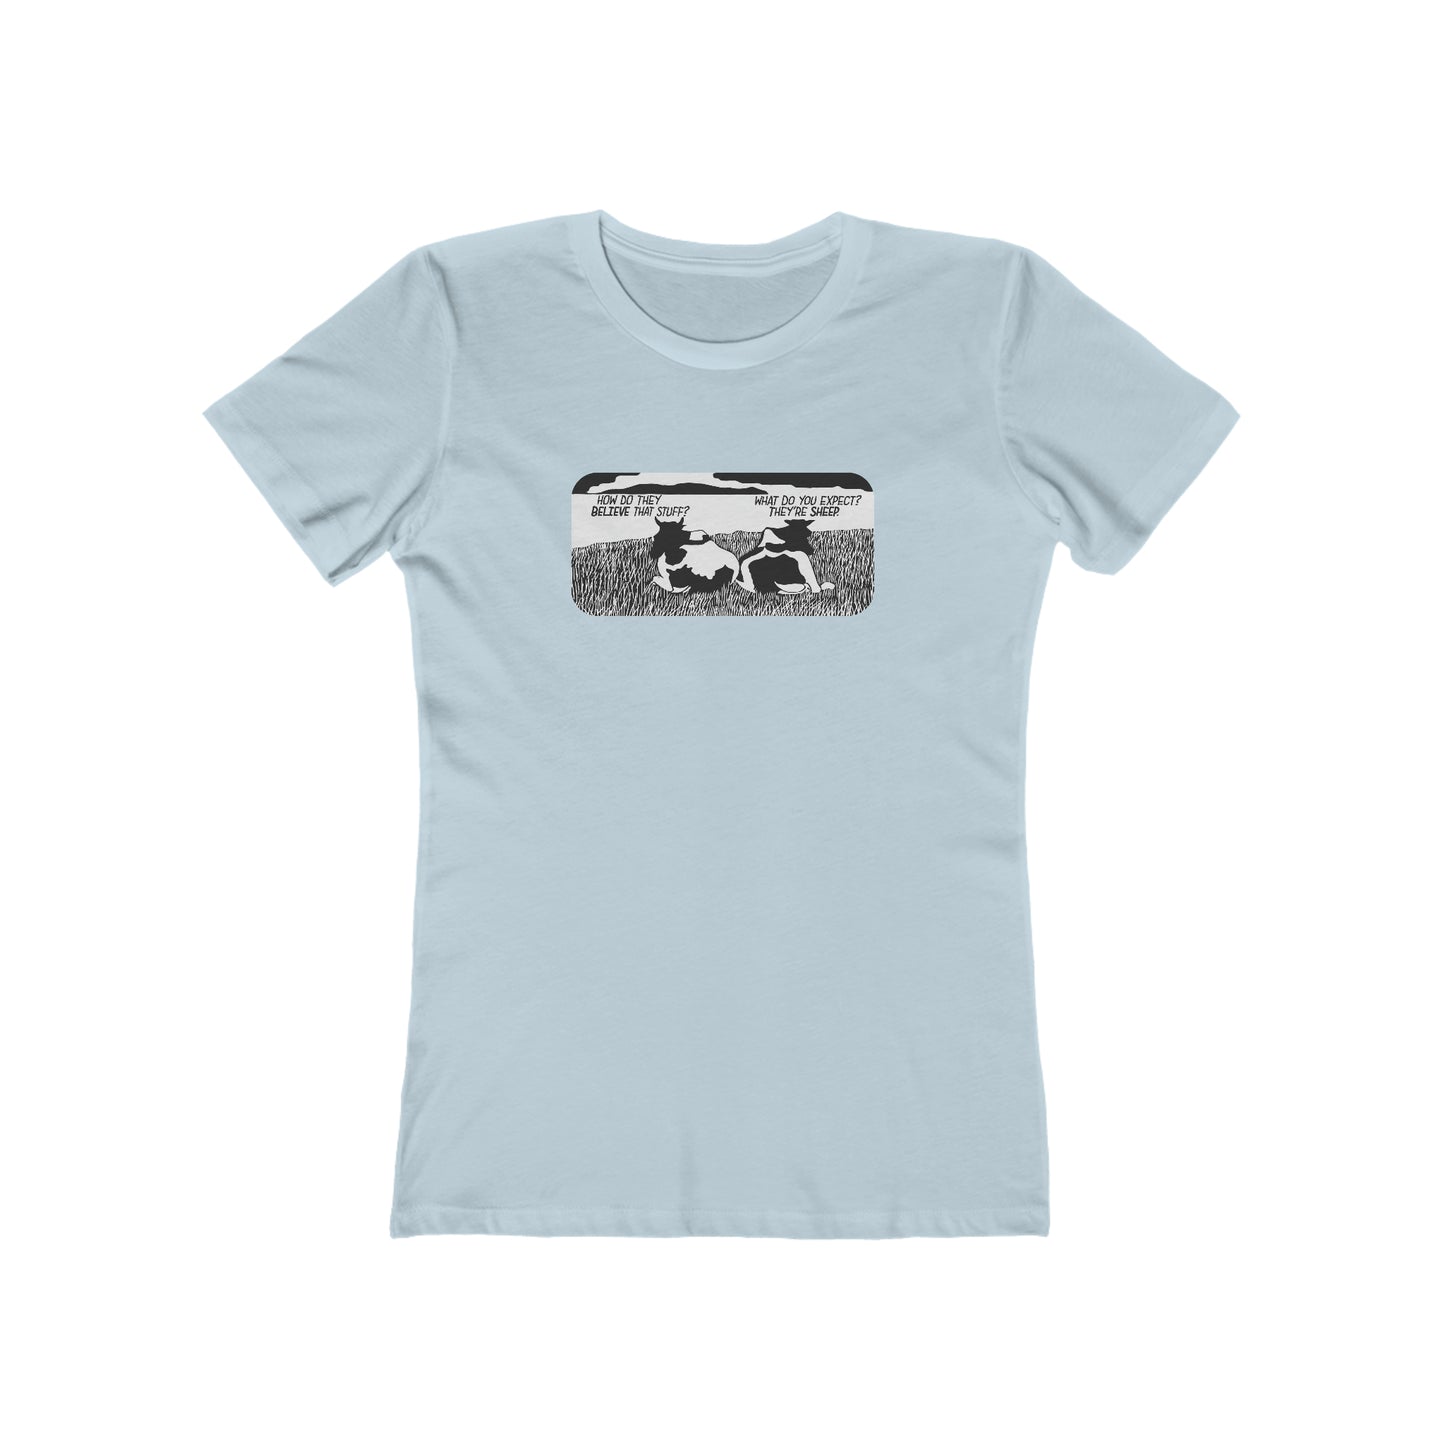 They're Sheep - Women's T-Shirt